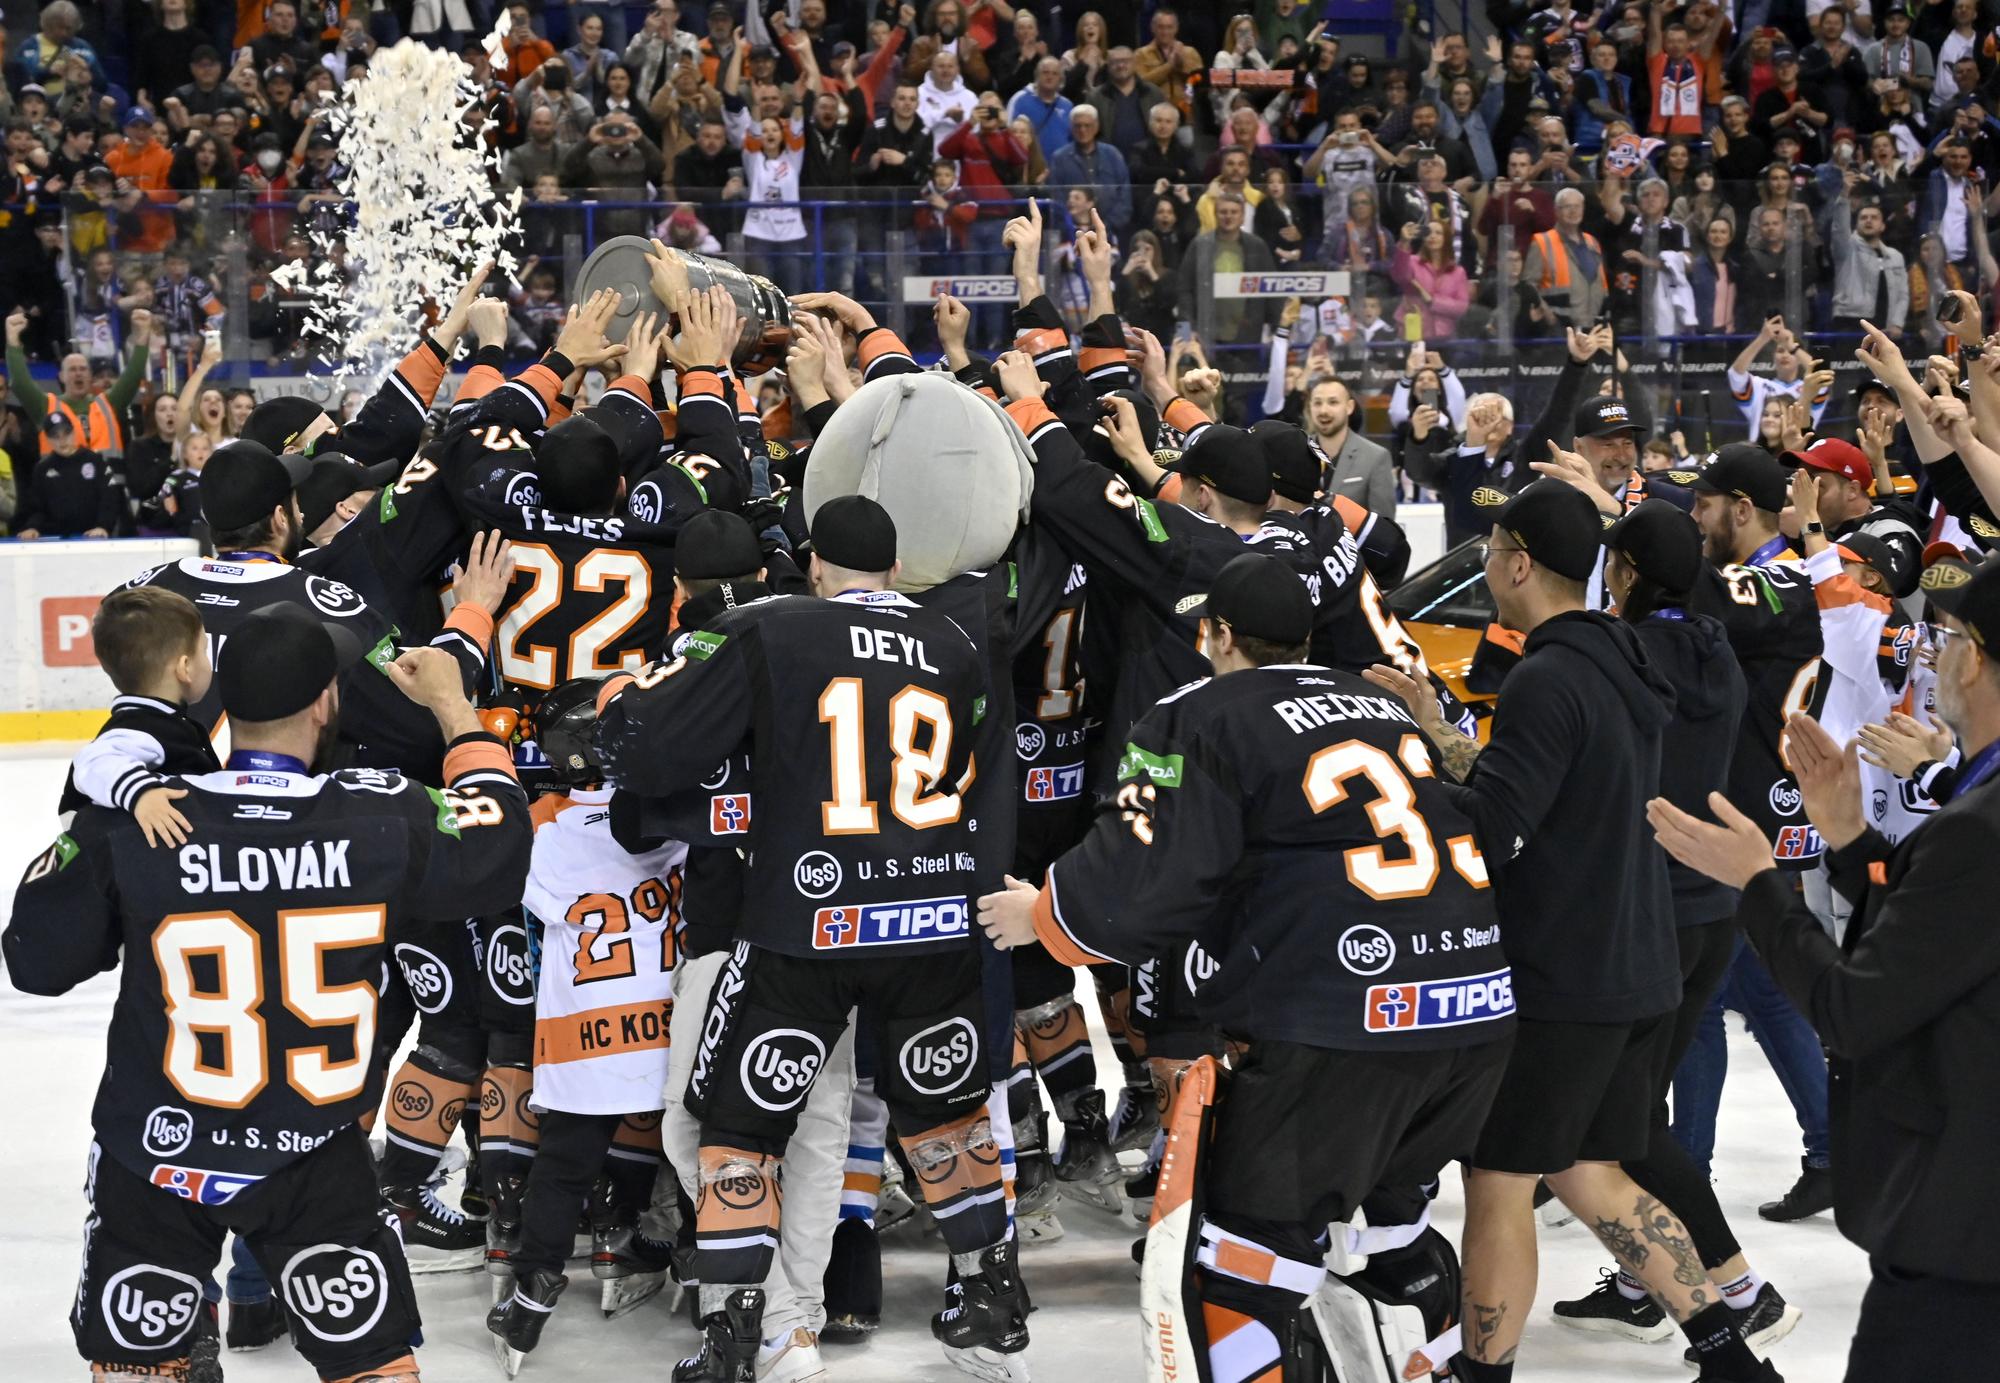 Hokejisti HC Košice sa tešia z víťazstva a zisku majstrovského titulu.